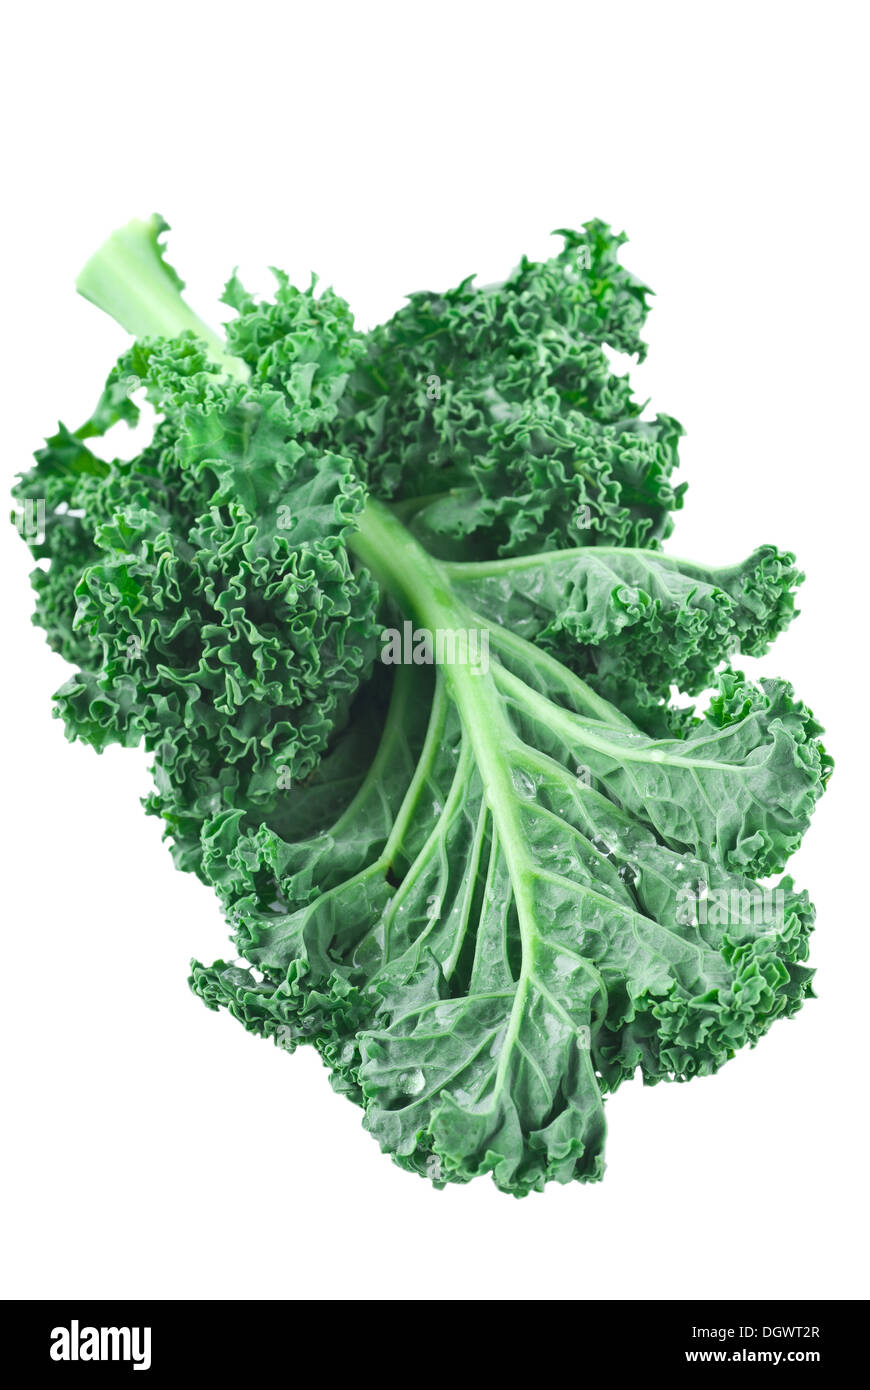 Fresh green kale on white background. Stock Photo